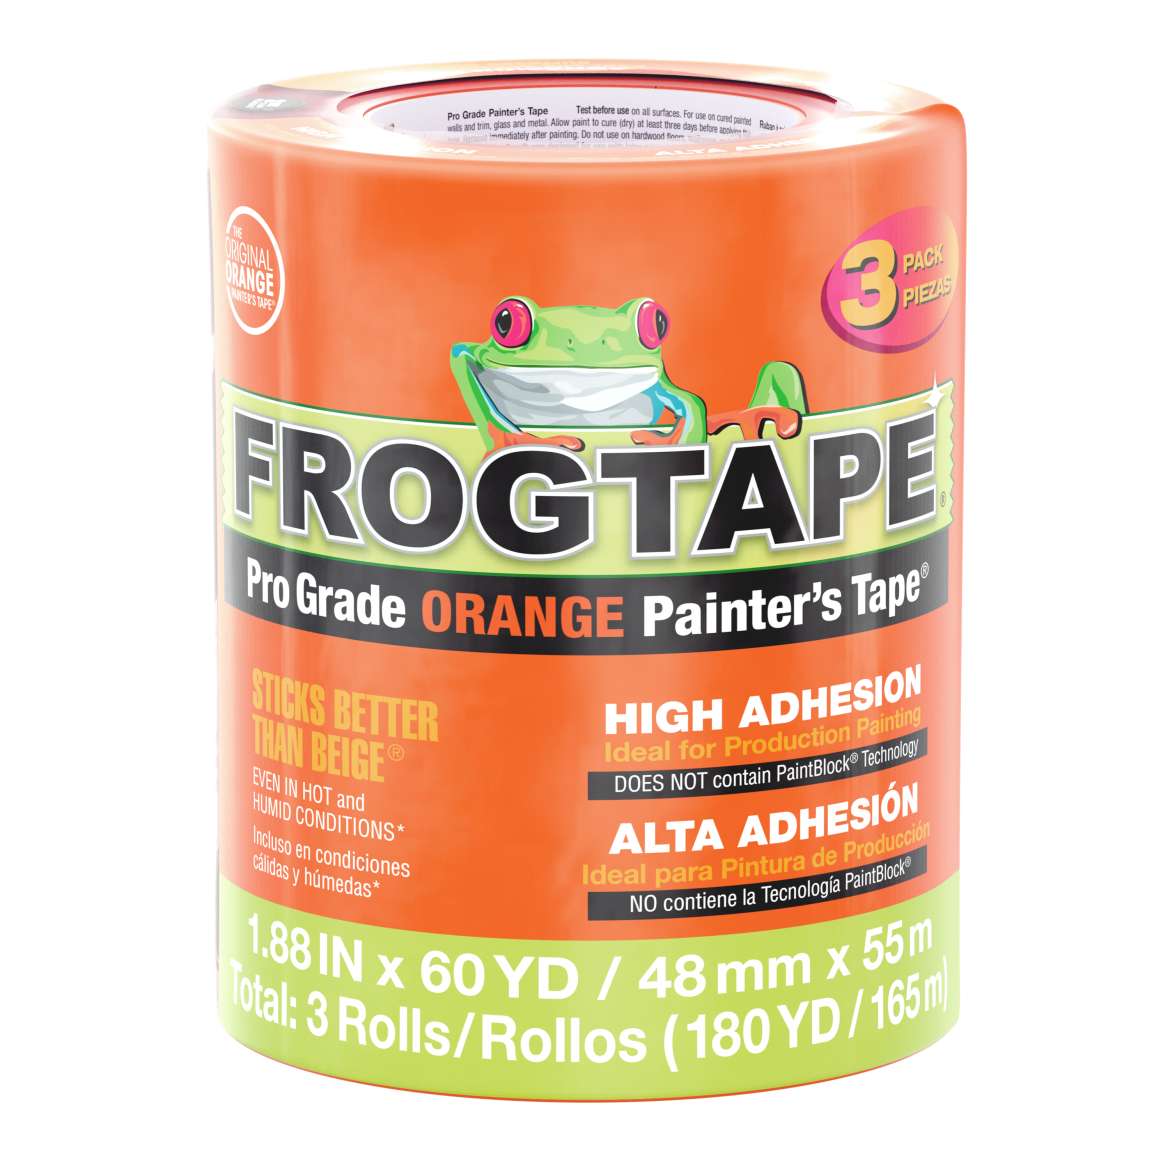 FrogTape® Pro Grade Orange Painter’s Tape® - Orange, 3 pk, 1.88 in. x 60 yd.